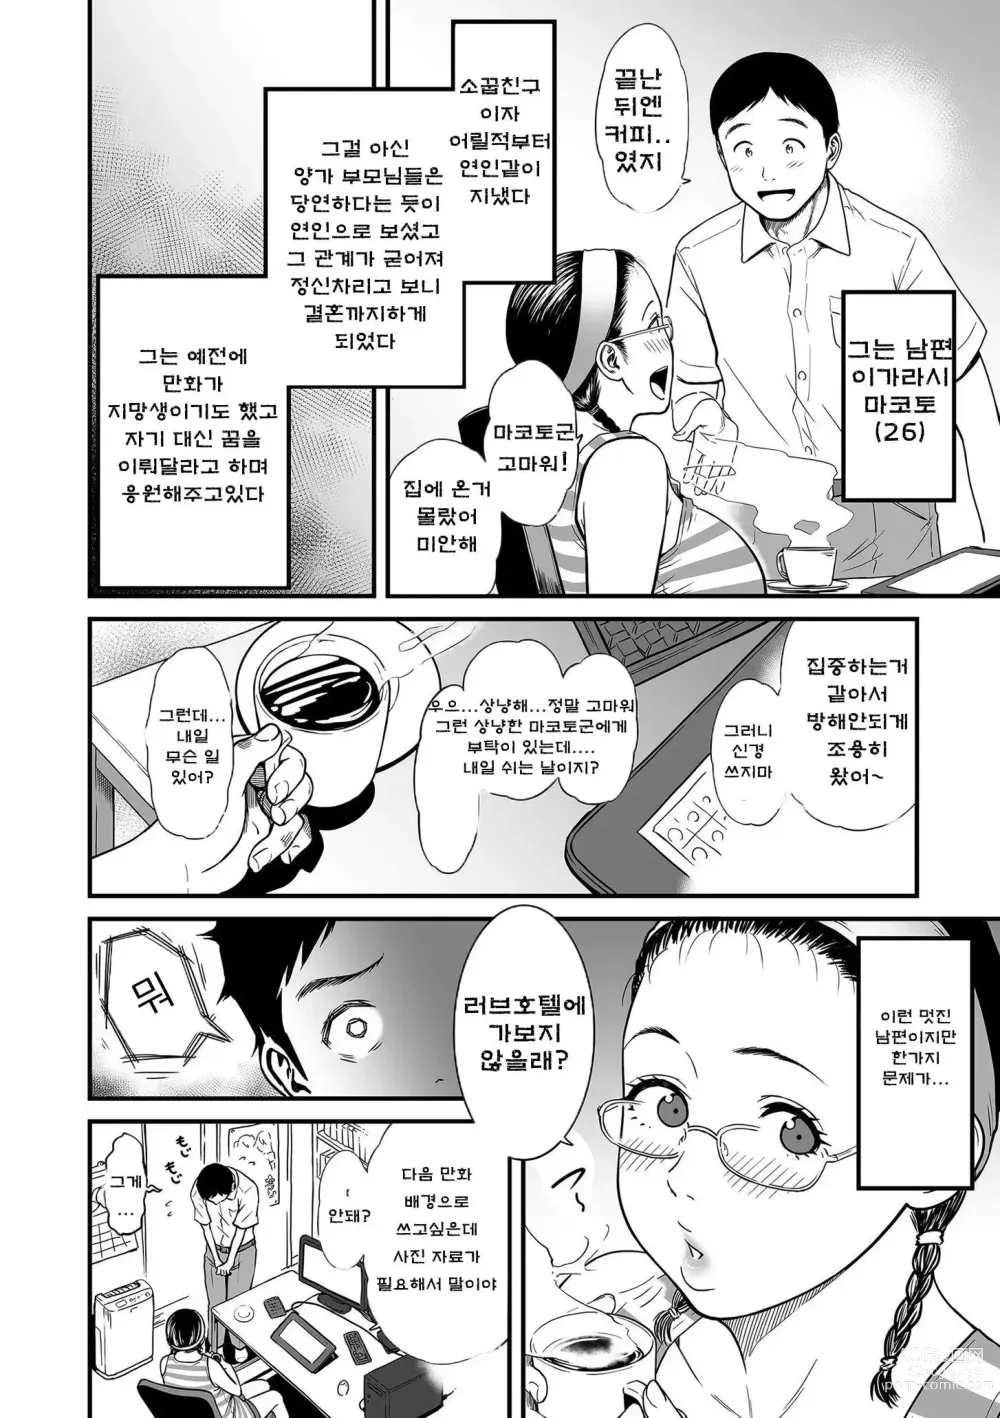 Page 16 of manga 여자 에로 만화가가 음란하다니 환상이지 않은가요